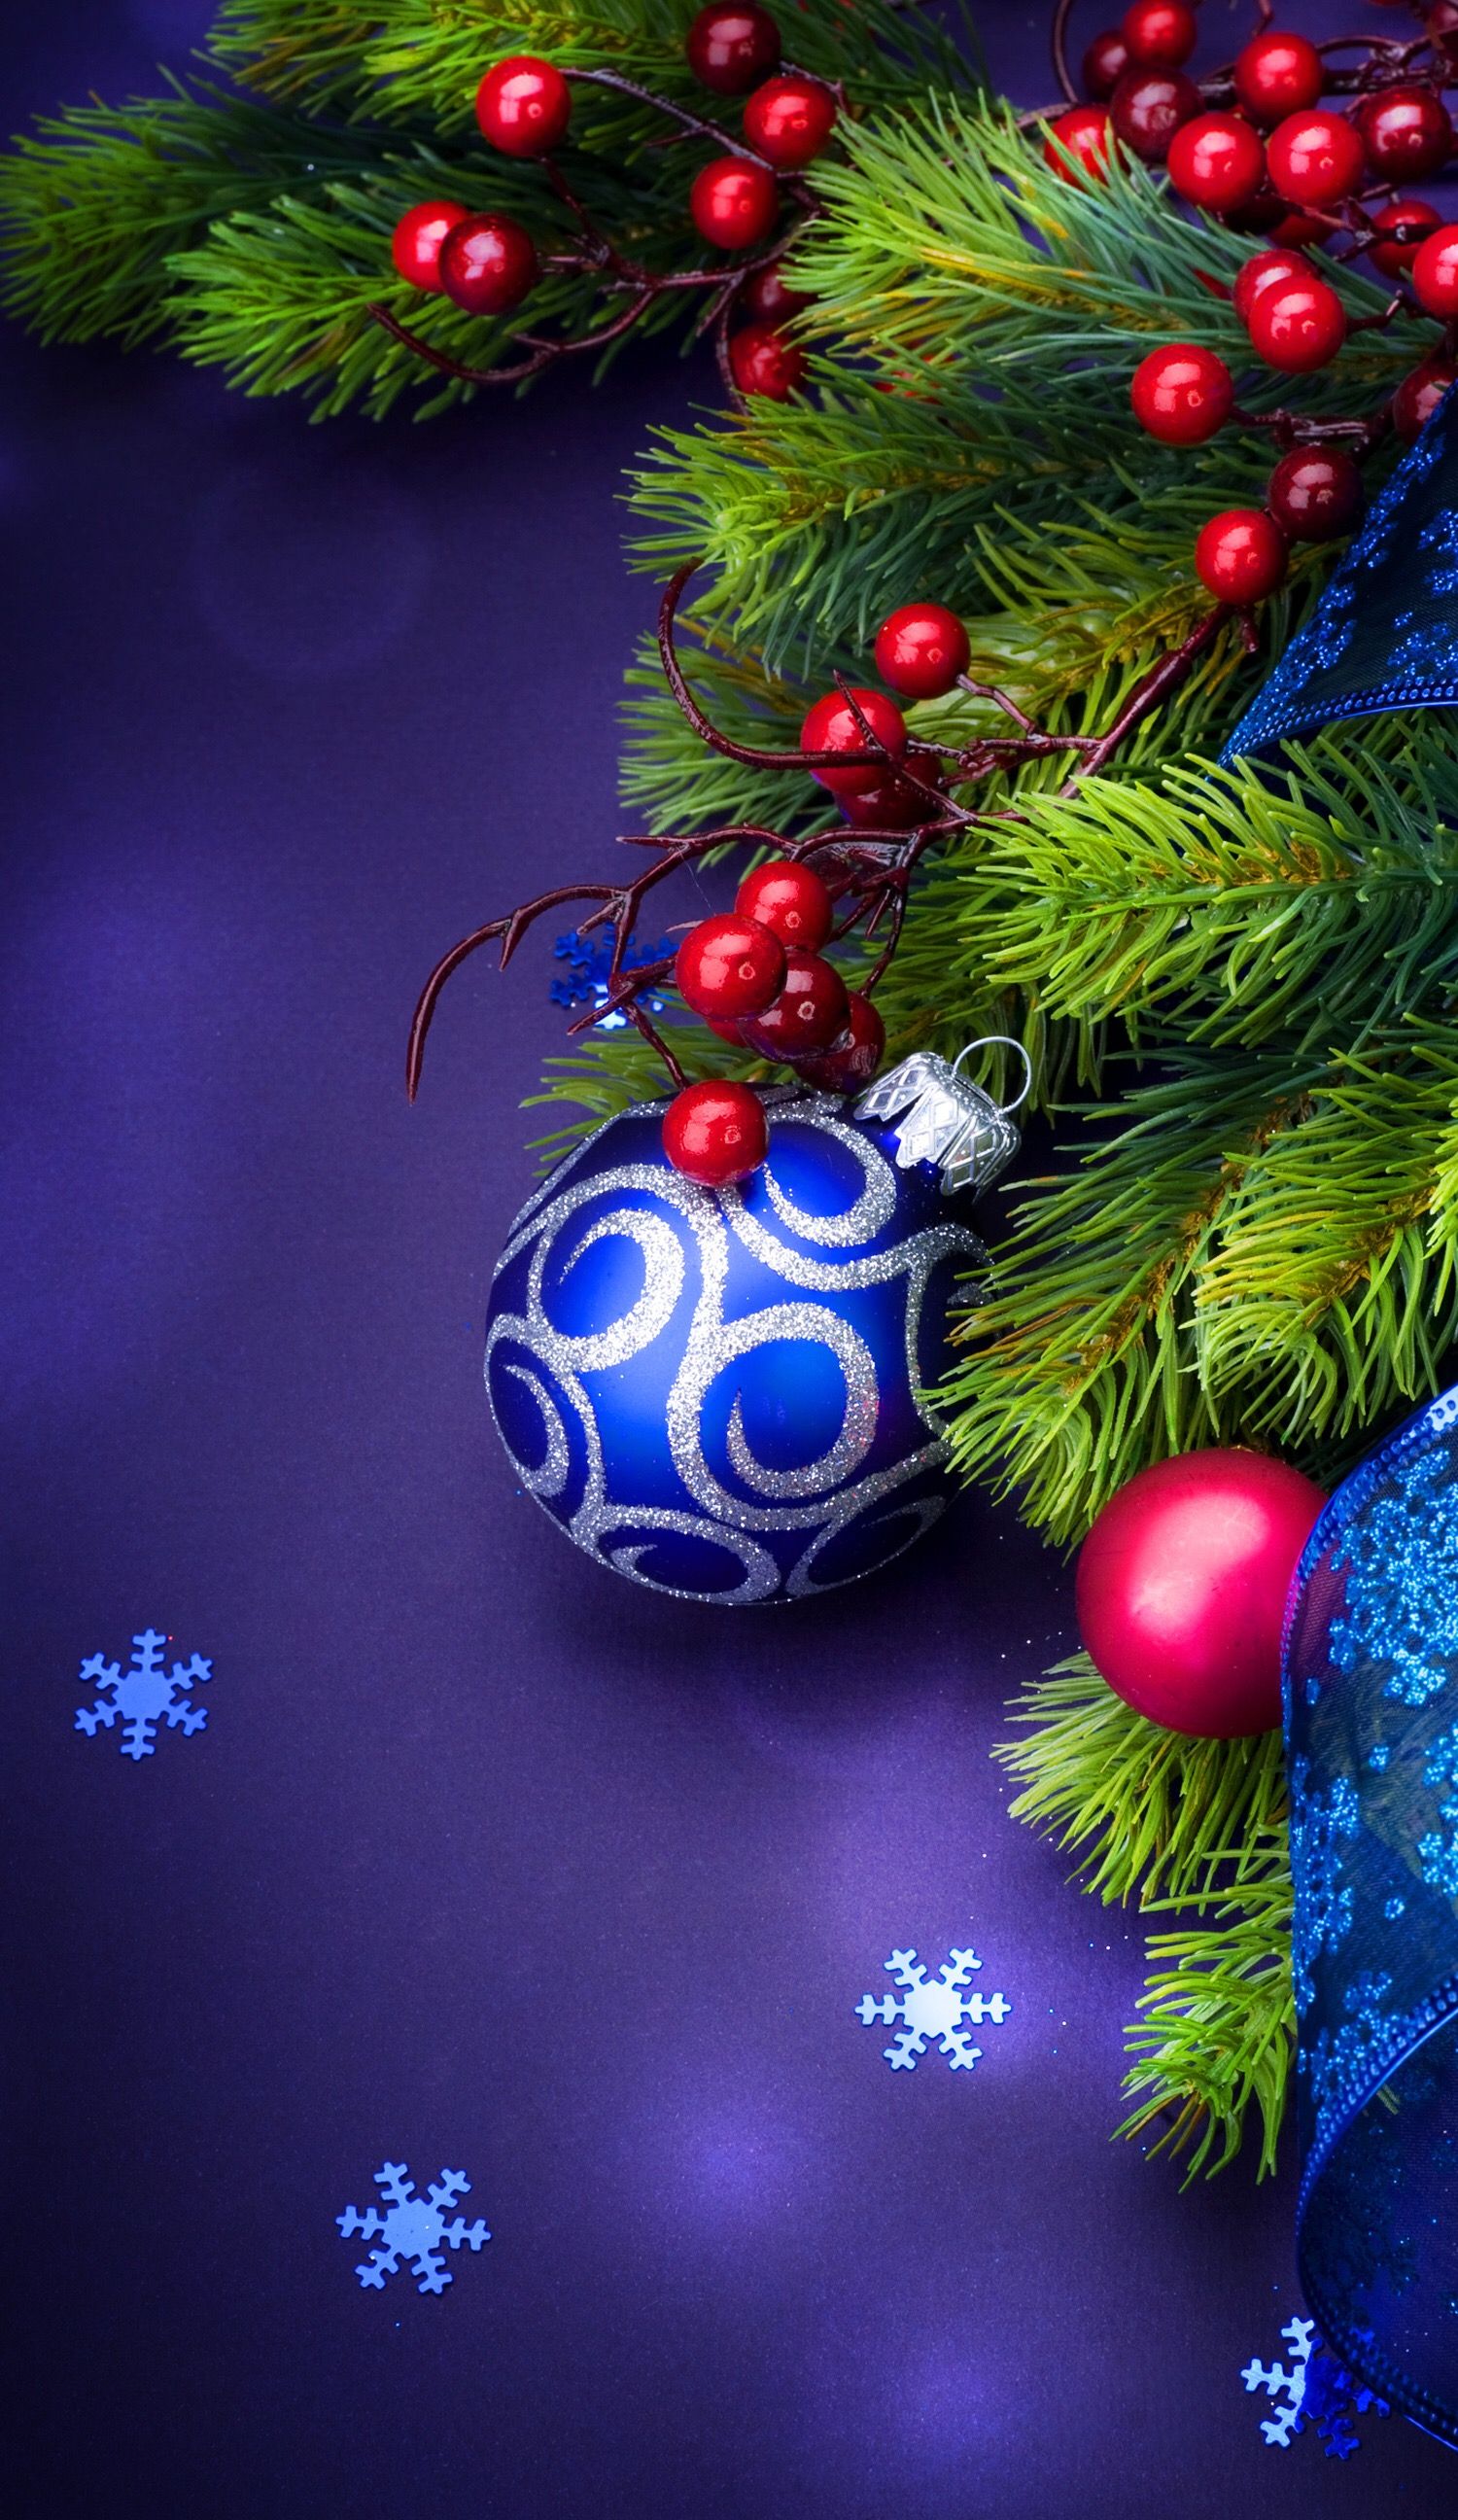 natale live wallpaper,albero di natale,ornamento di natale,decorazione natalizia,albero,abete